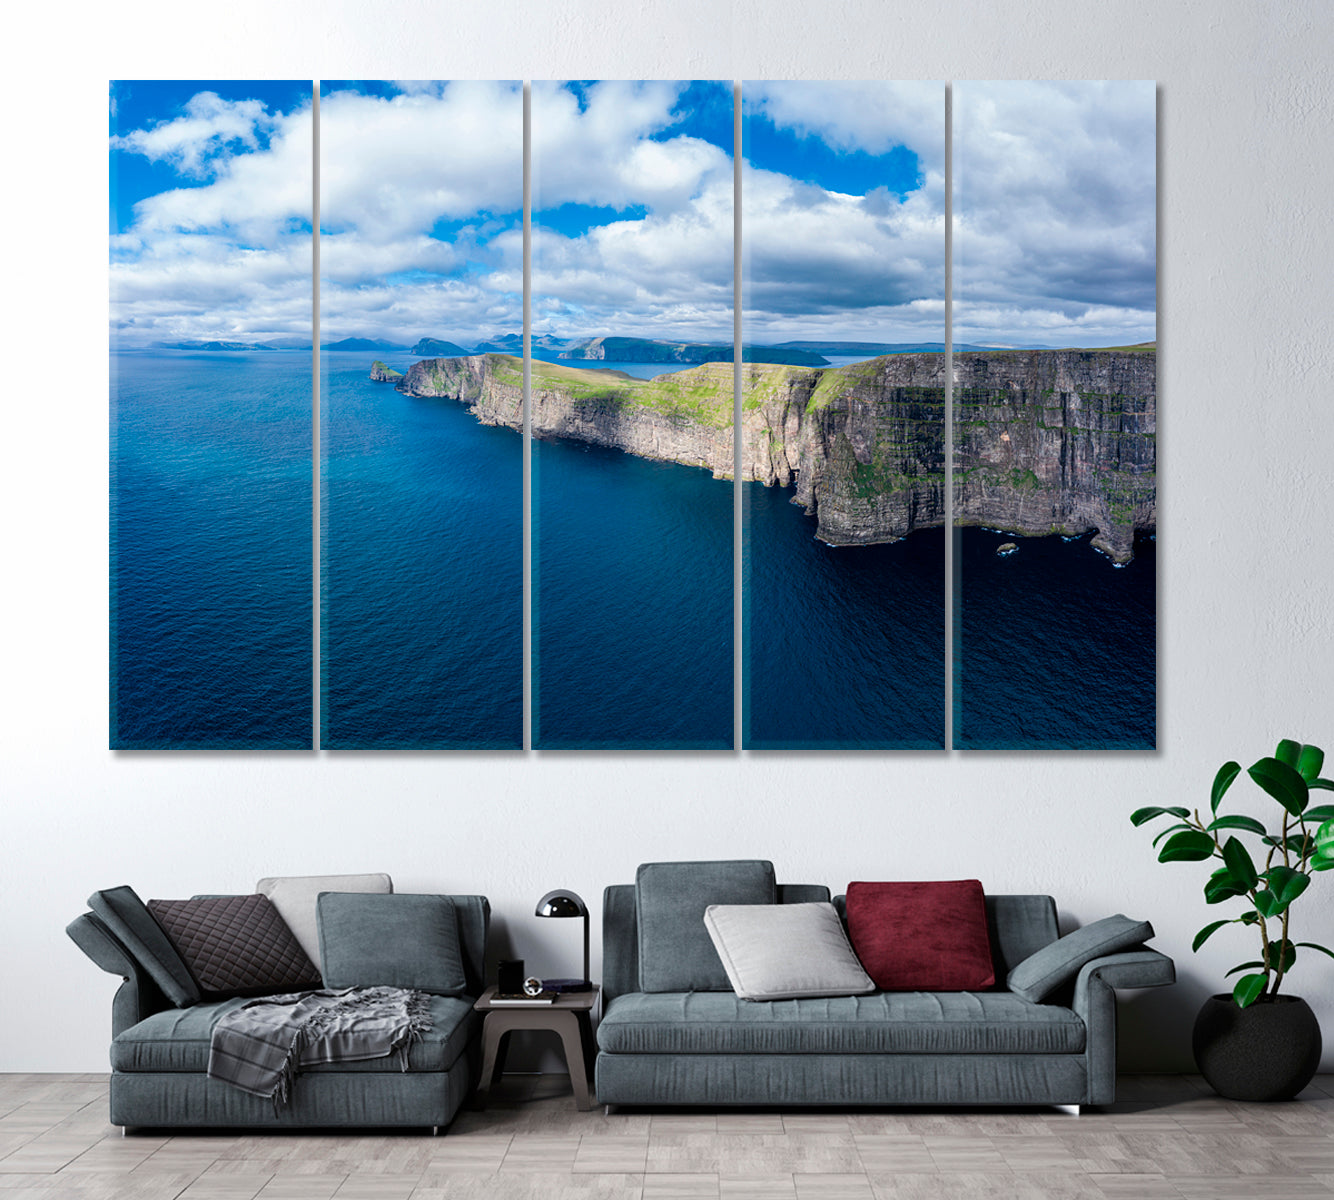 Sandoy Island Cliffs Faroe Islands Canvas Print ArtLexy 5 Panels 36"x24" inches 